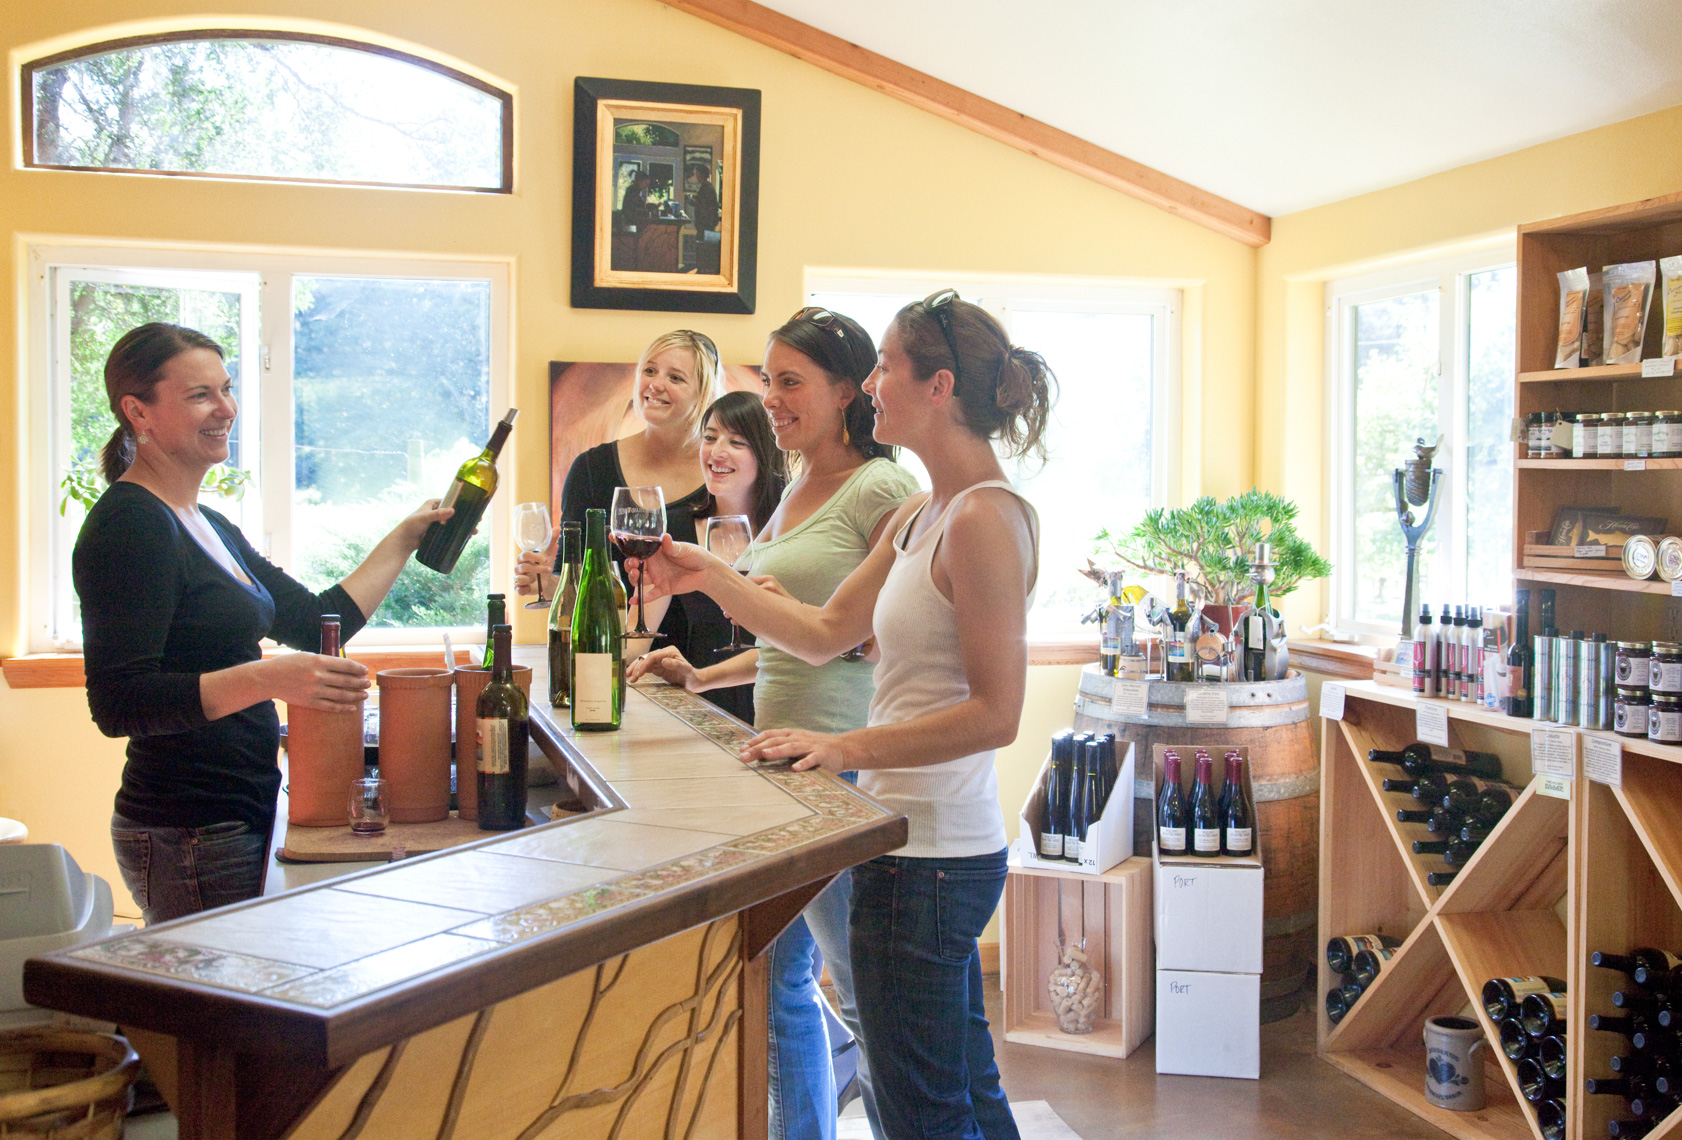 Women friends having fun wine tasting in winery tasting room